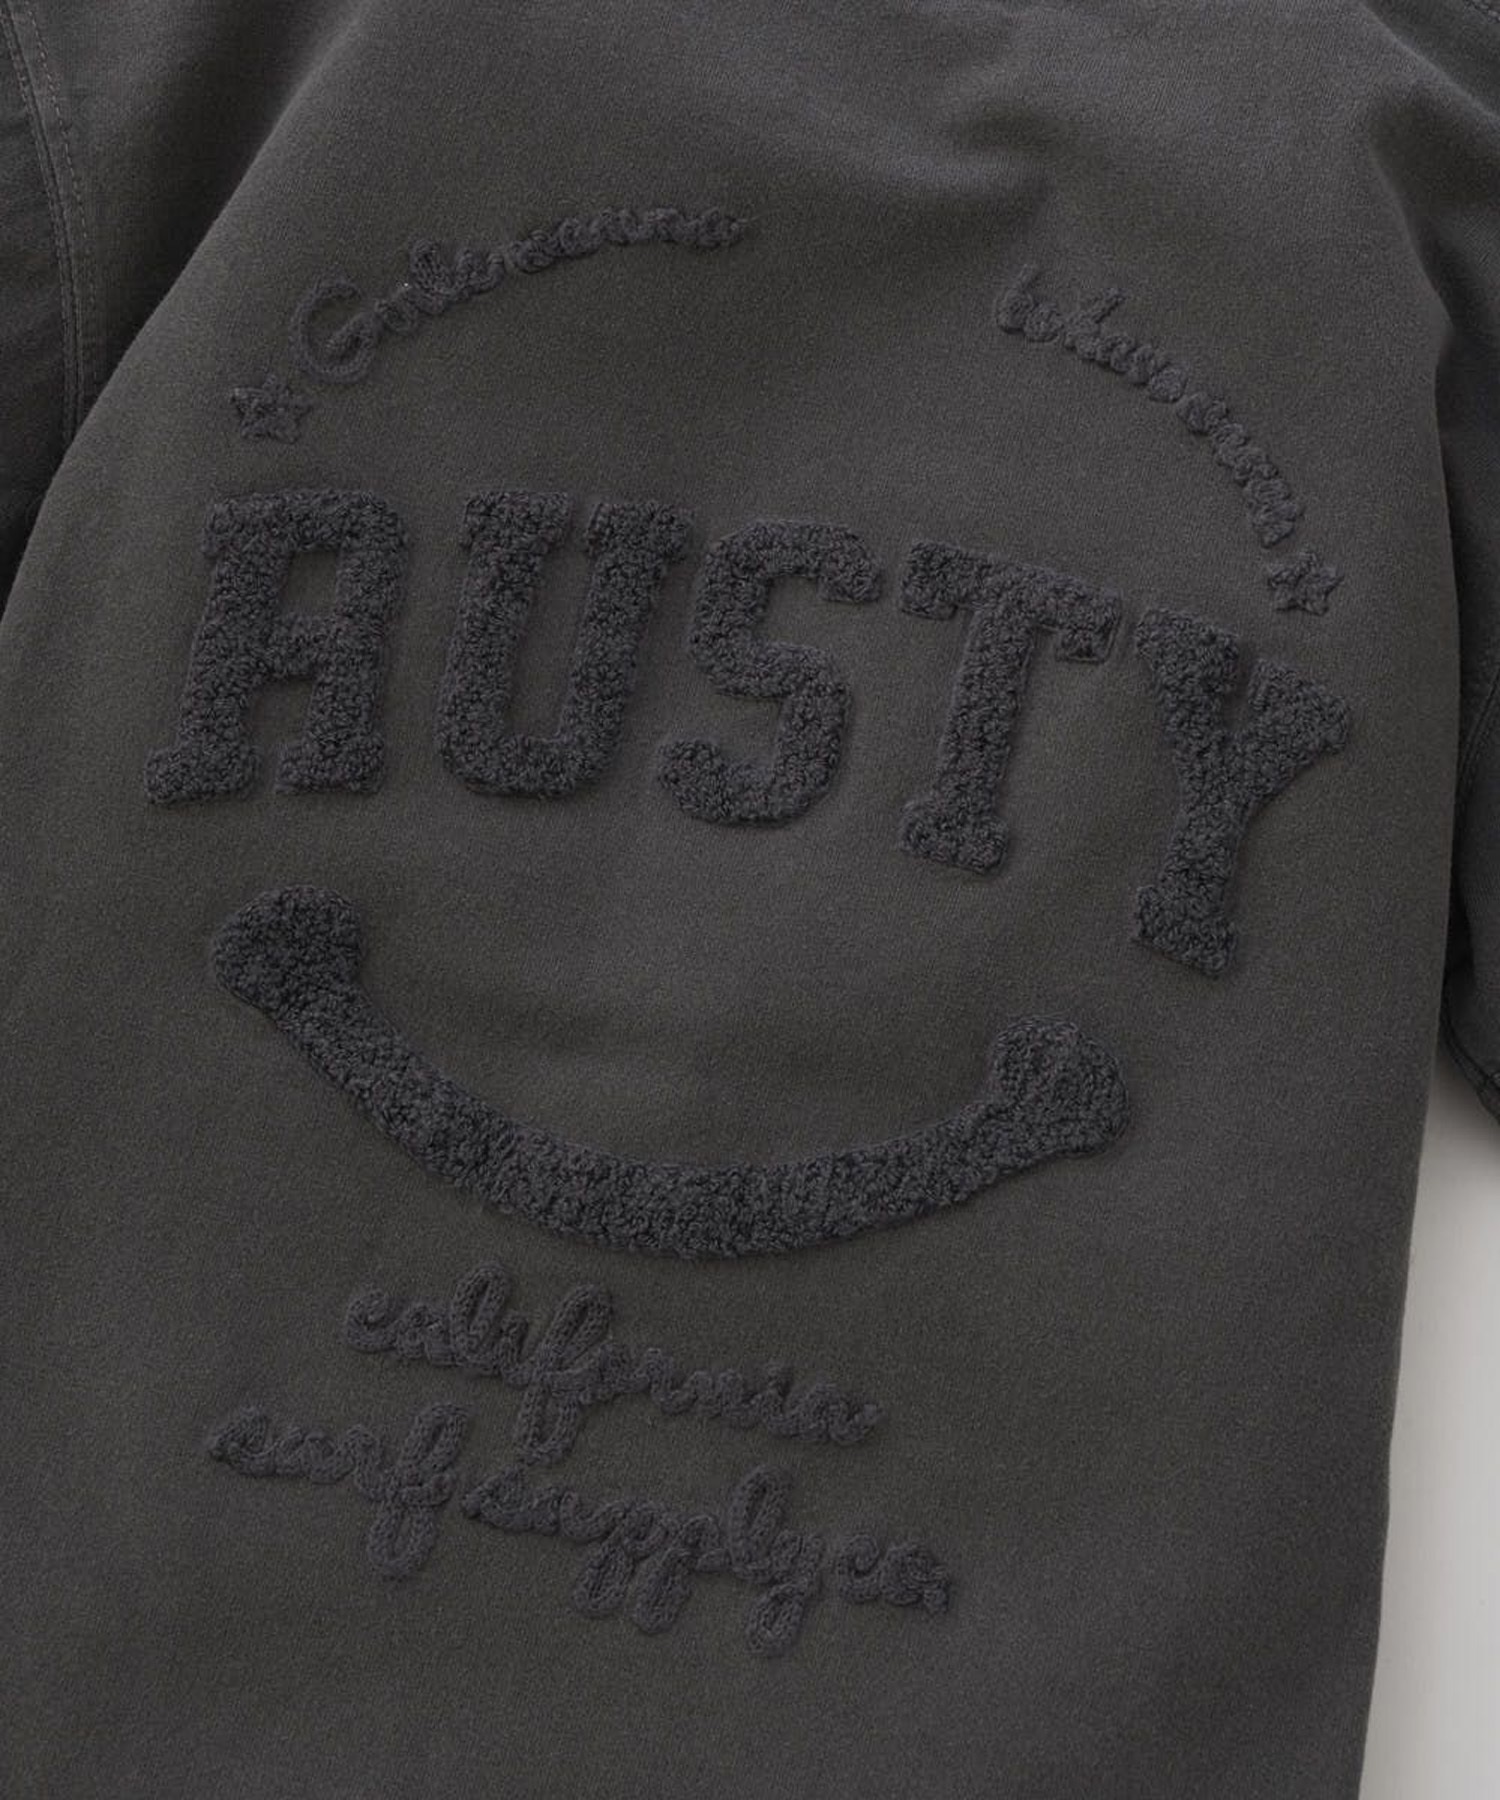 RUSTY ラスティー キッズ Tシャツ 半袖 バックロゴ ニコちゃんマーク シンプル 964500(CGY-130cm)